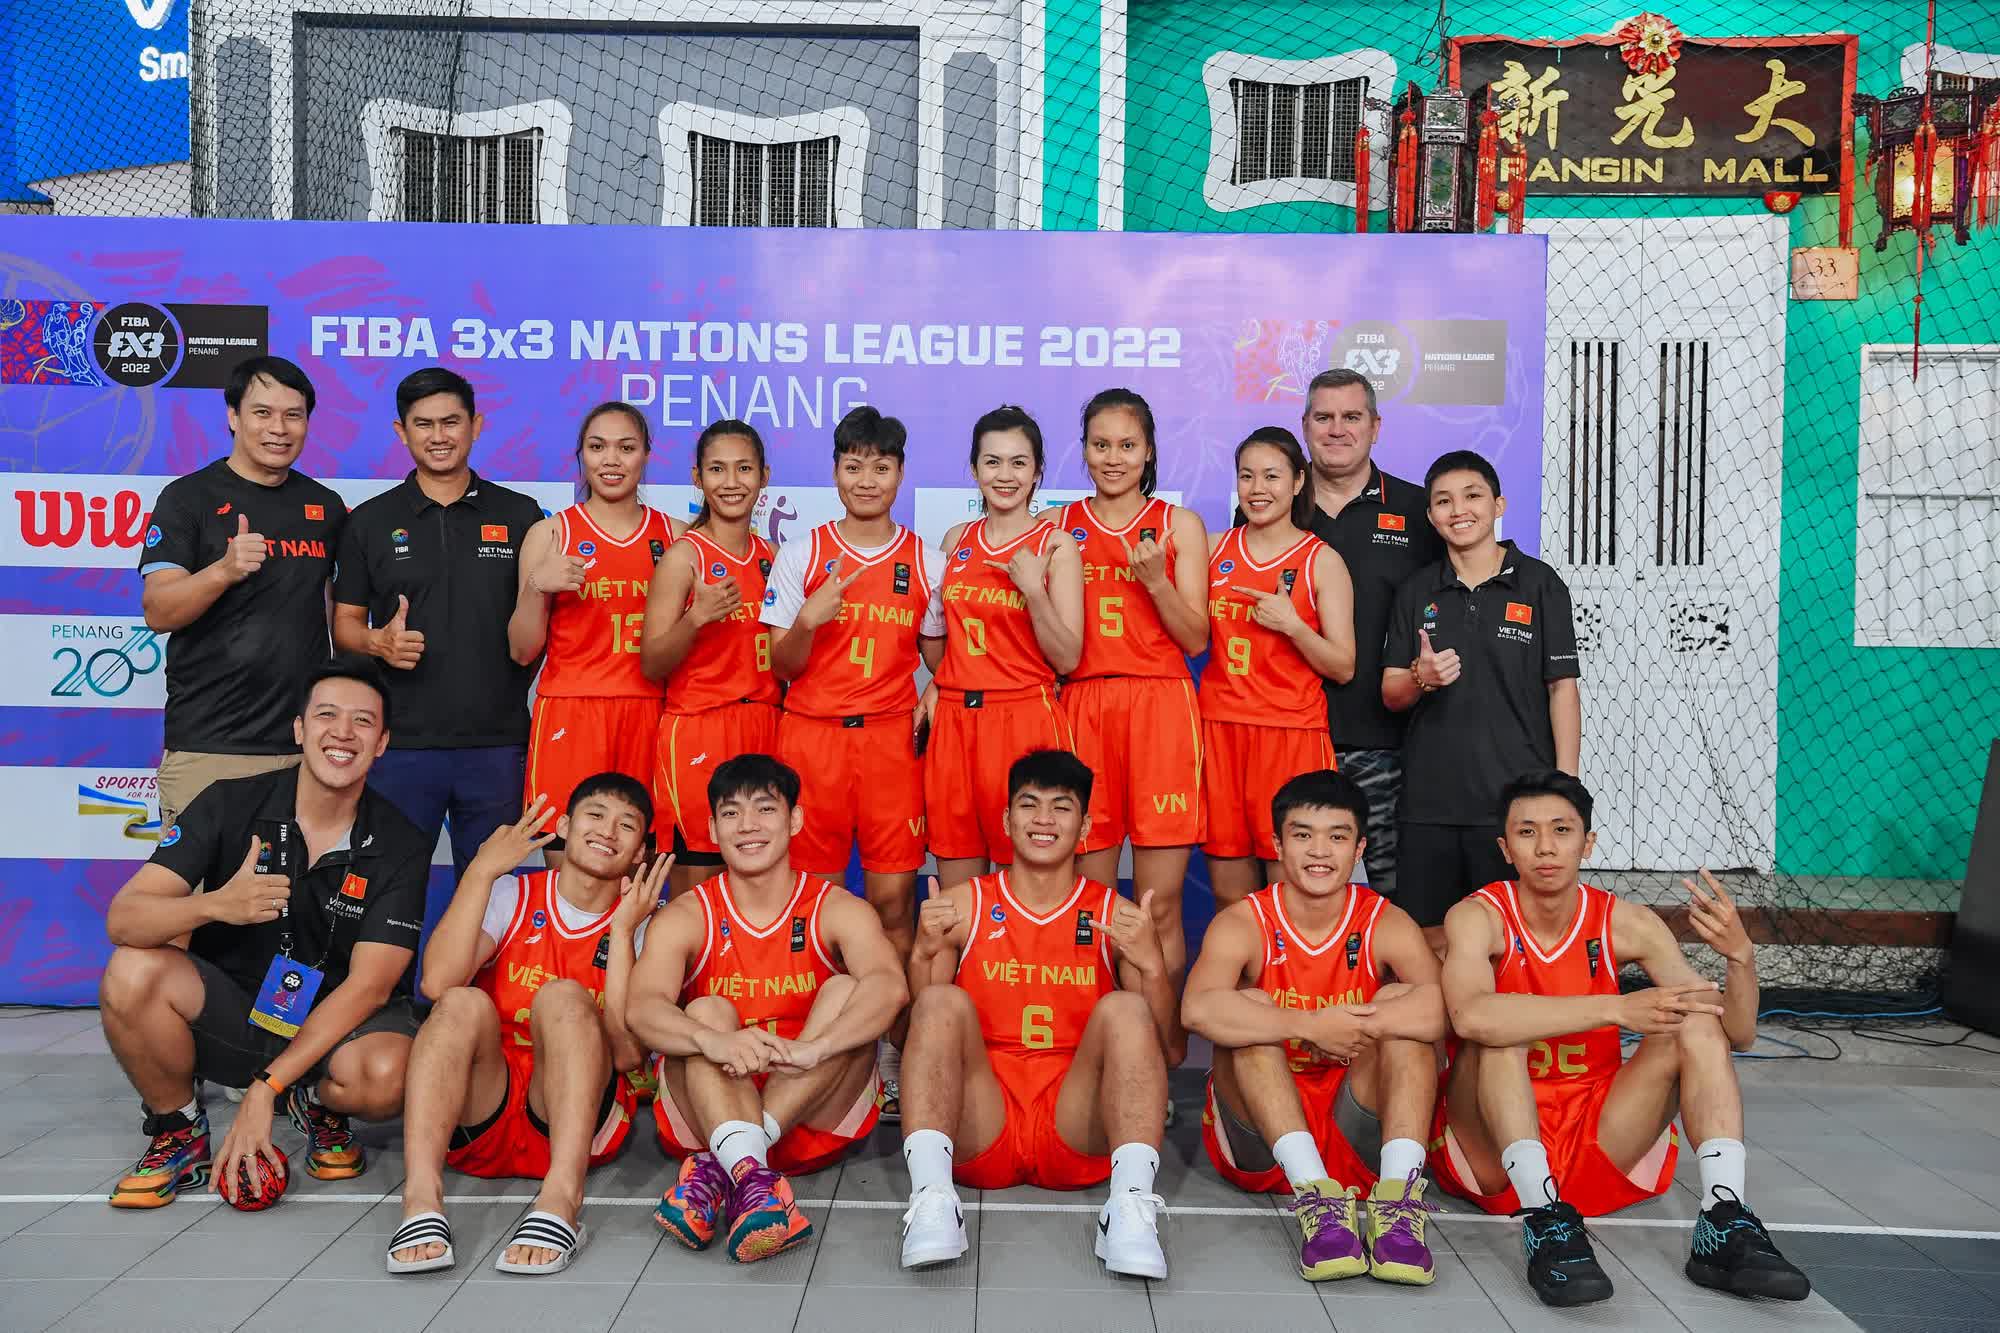 Nhìn lại bóng rổ Việt Nam năm 2022: Dám đi để trưởng thành - Ảnh 5.